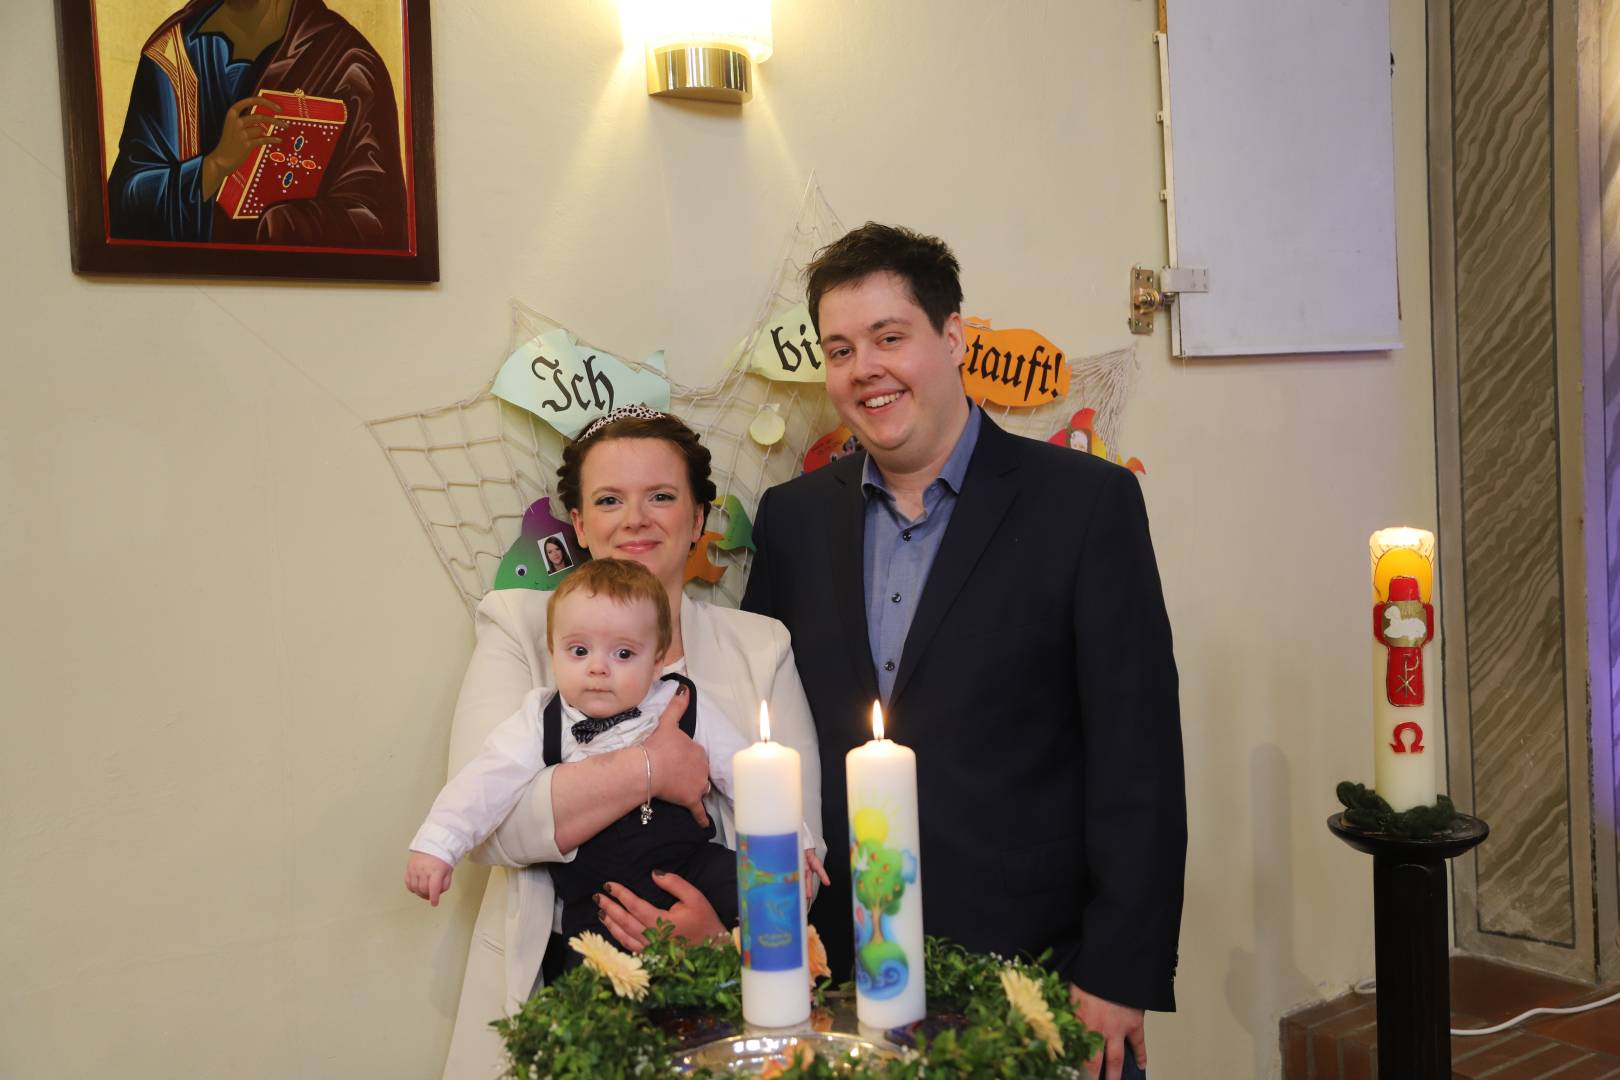 Taufe von Virginia und Mattis Helmke in der St. Franziskuskirche